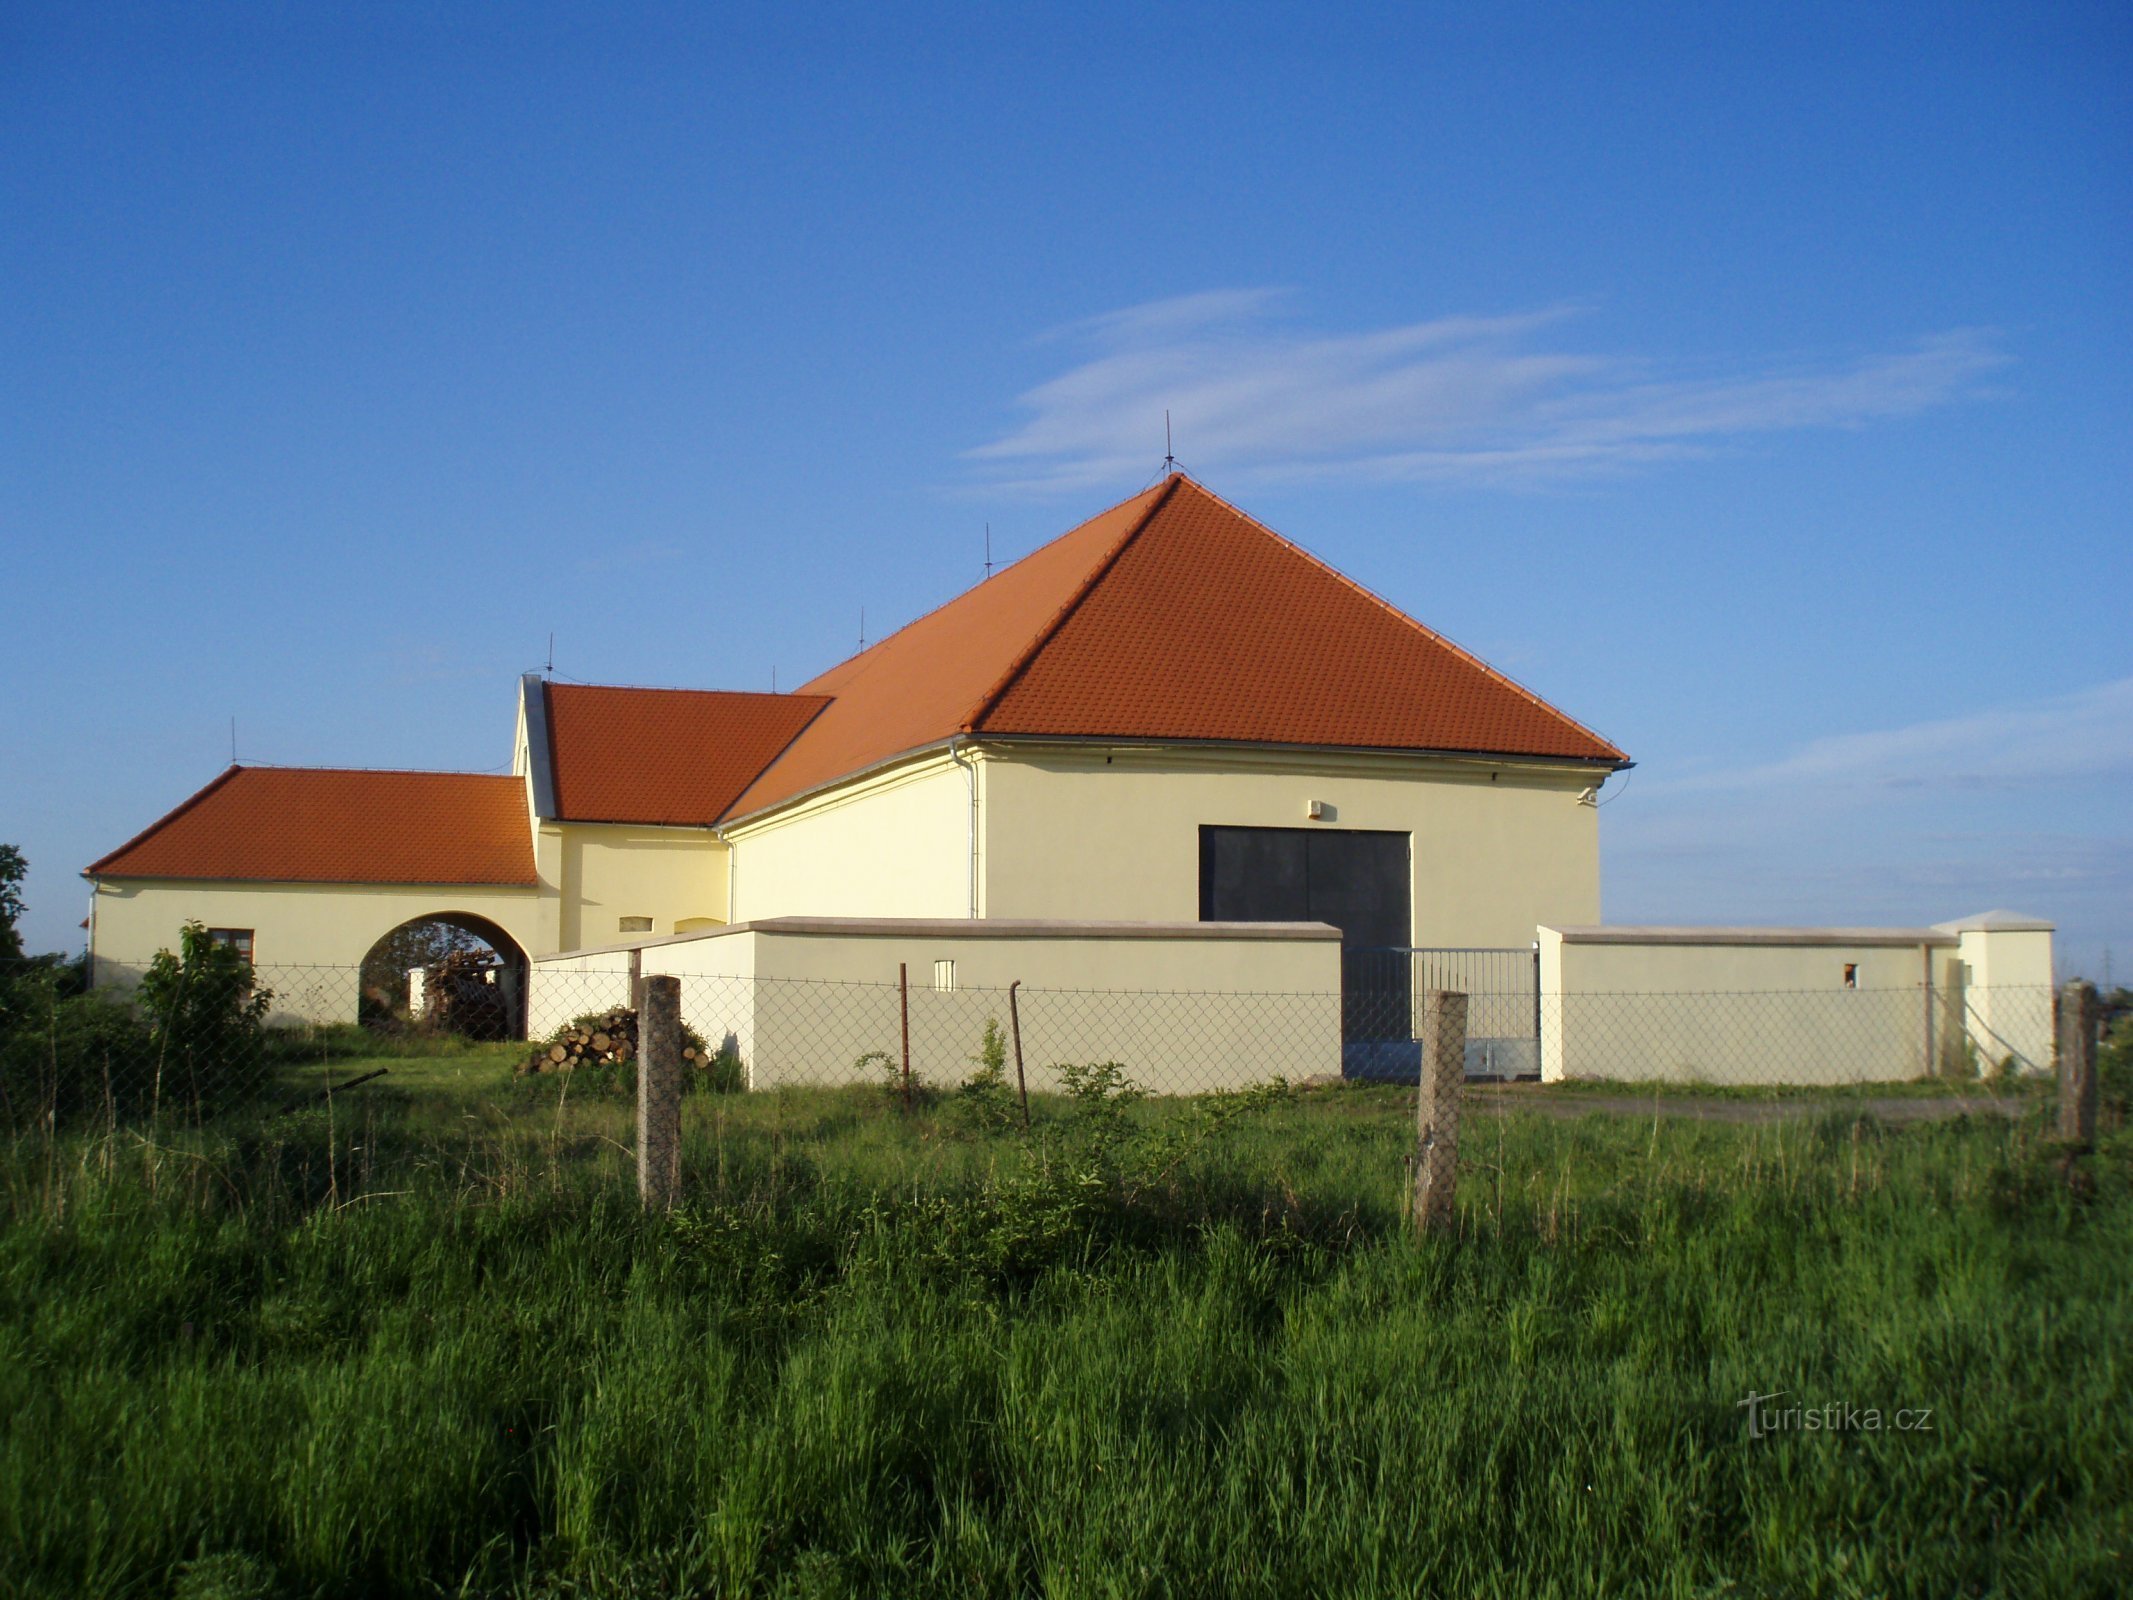 Nhà máy sản xuất bột gần Kuklen (Hradec Králové, ngày 8.5.2011 tháng XNUMX năm XNUMX)